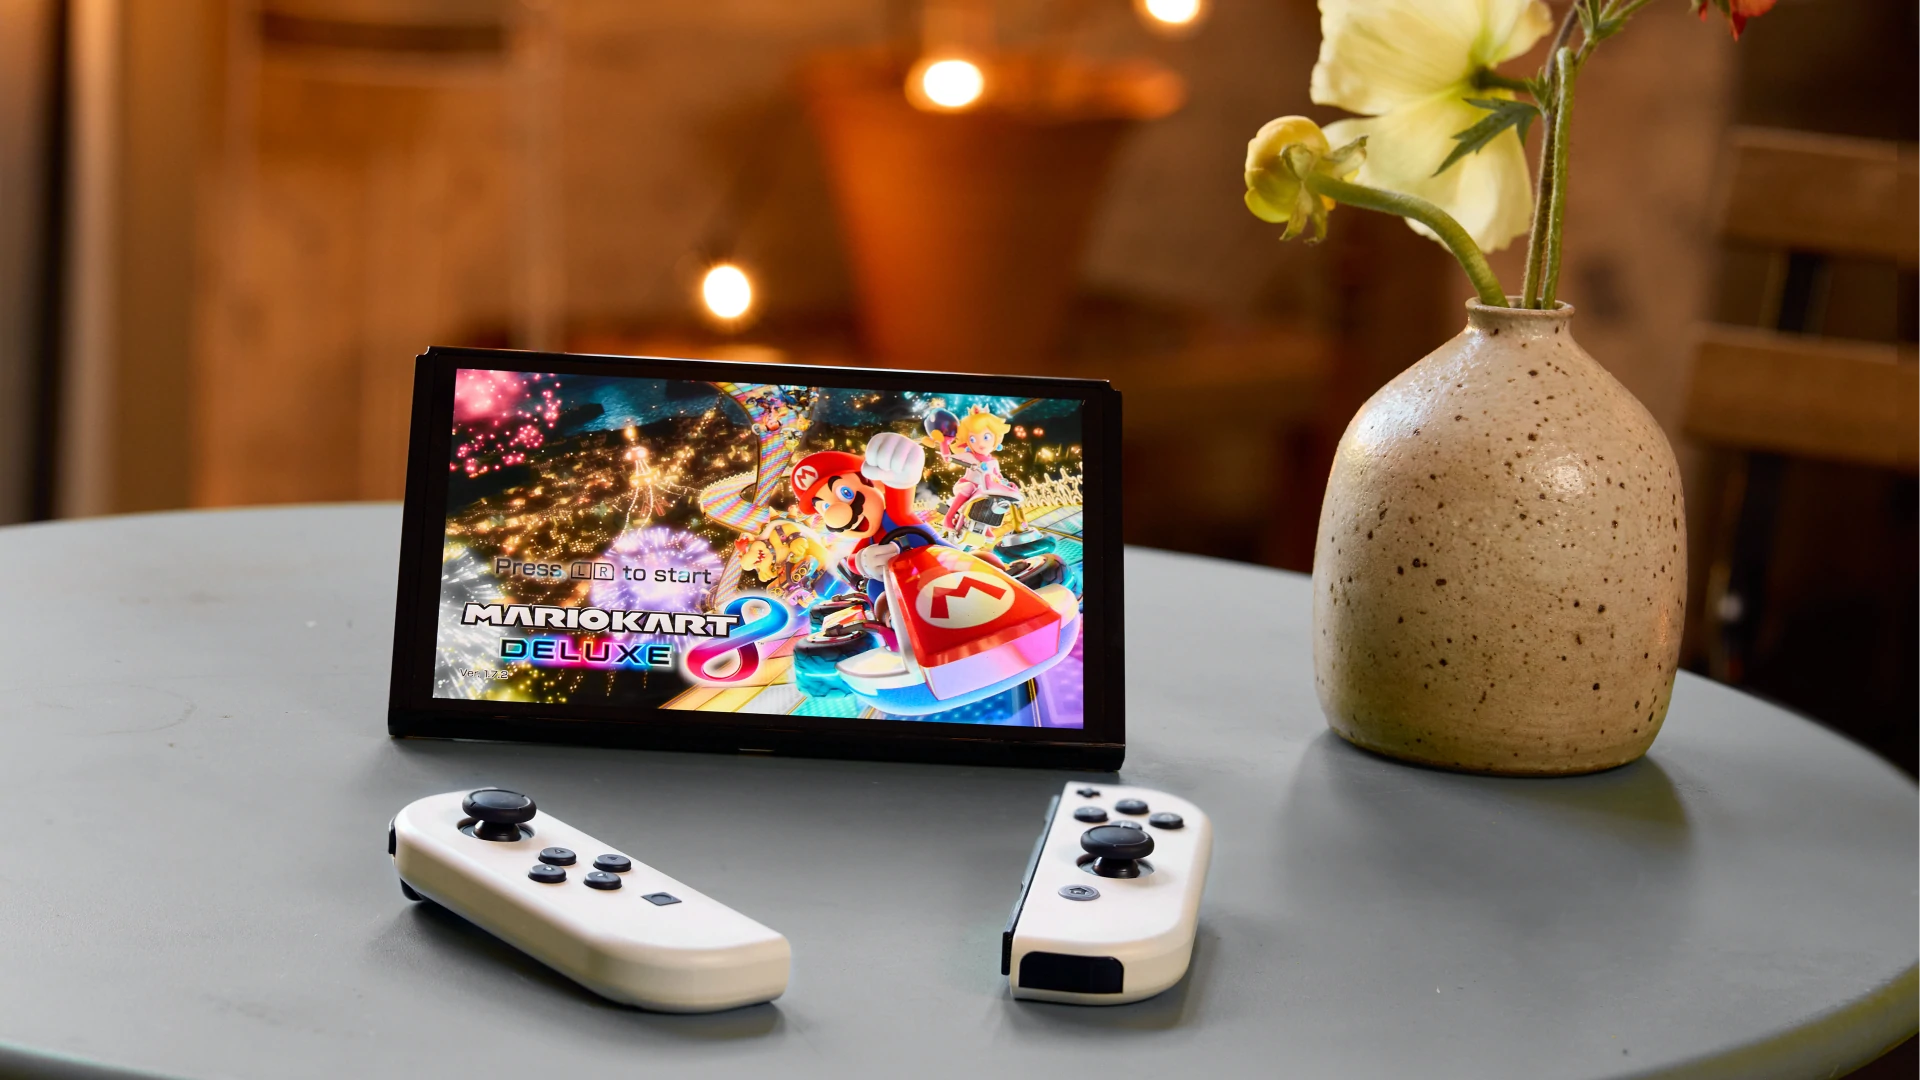 Herní konzole Nintendo Switch OLED je vybavena vnitřní flash pamětí eMMC o kapacitě 64 GB pro vaše oblíbené hry a aplikace.